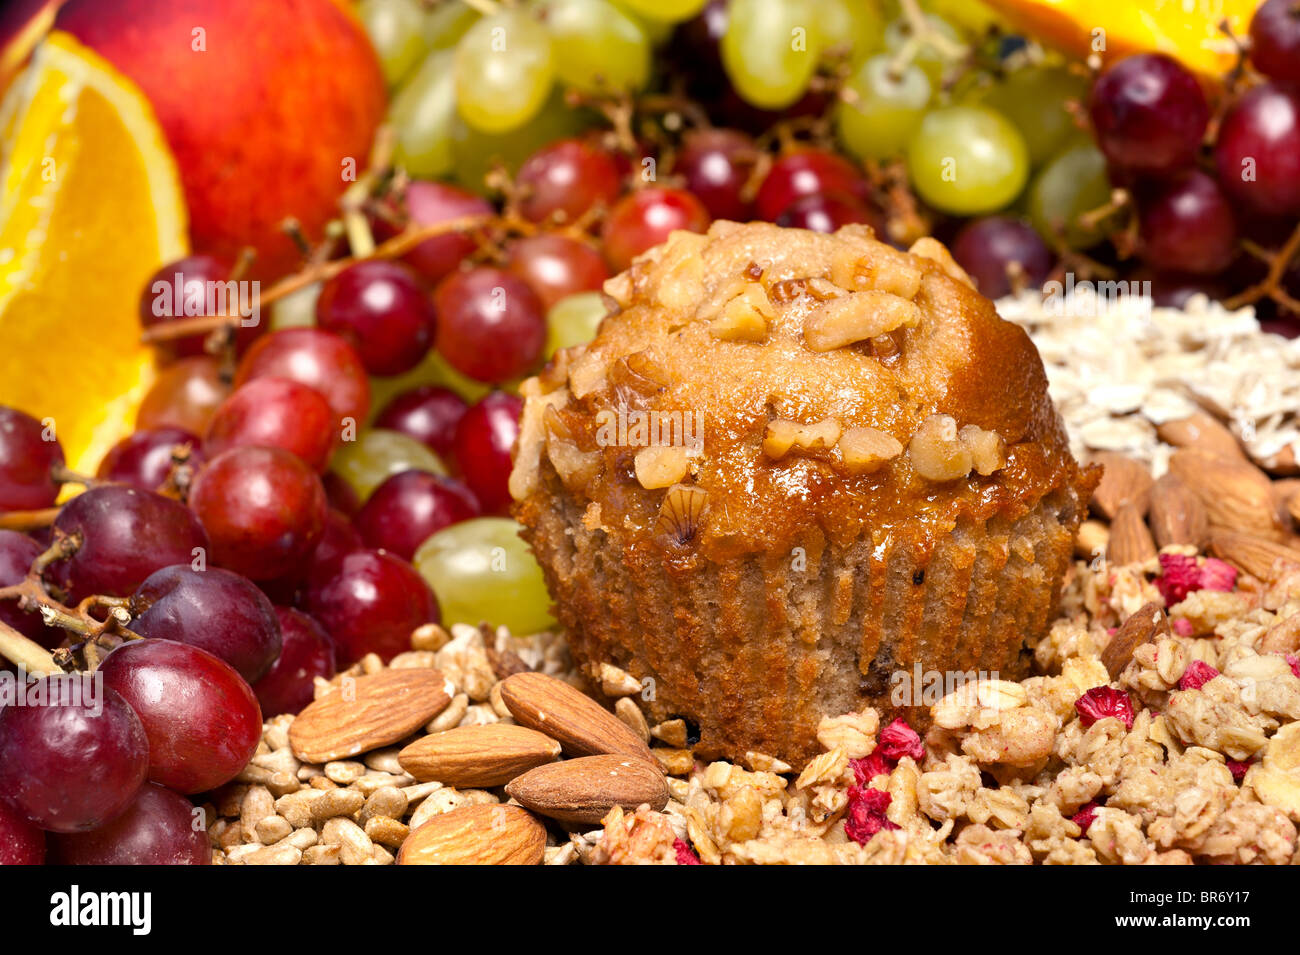 Ein Frühstück-Einstellung des frisch gebackenen Muffins mit Obst und anderen Gewürzen. Stockfoto